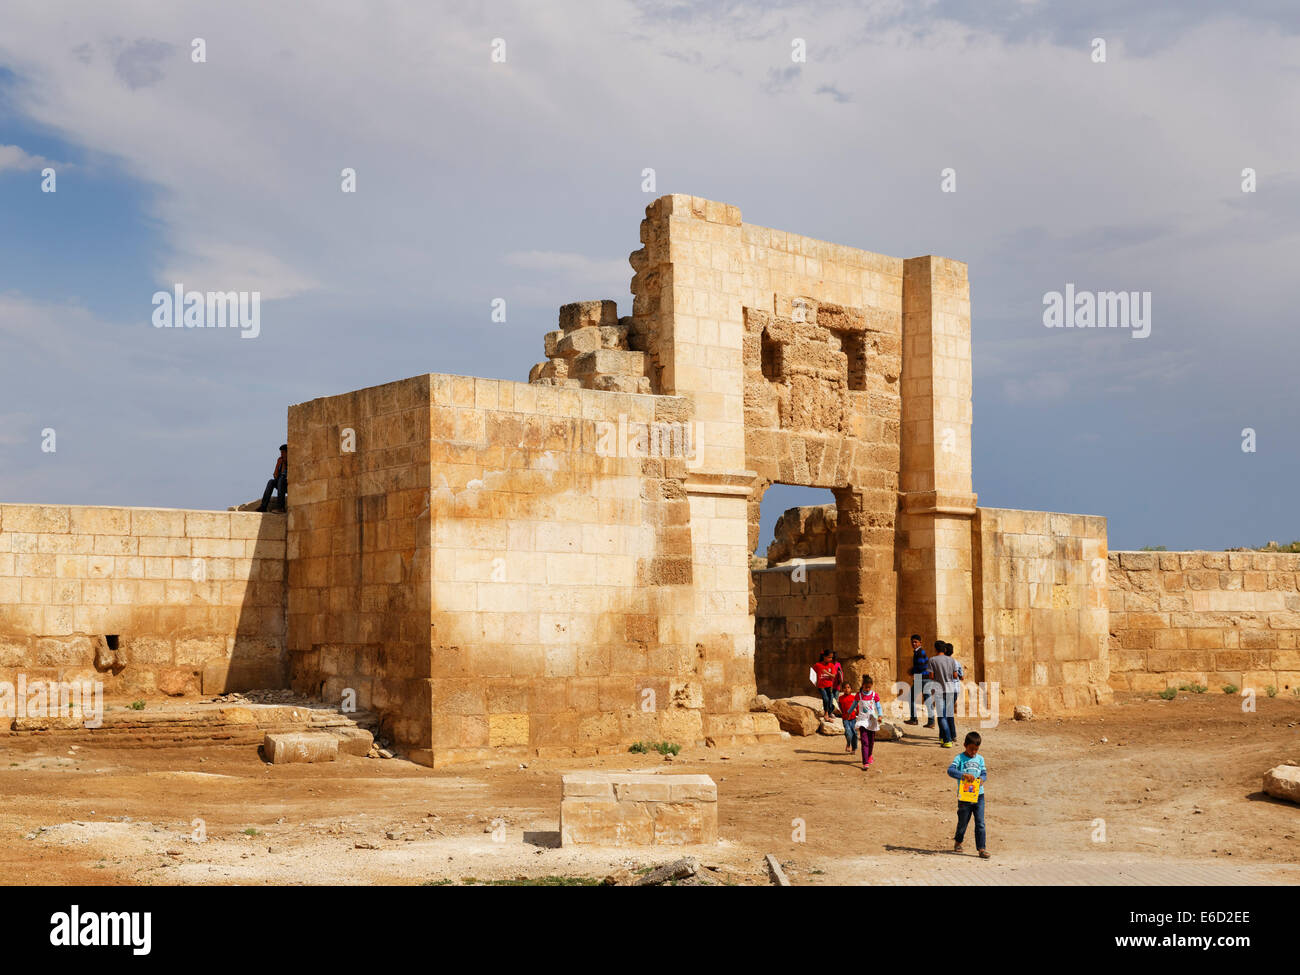 Aleppo-Gate oder Halep Kapı, Stadttor in der alten Stadt Wand, Harran, Şanlıurfa Provinz, Provinz Urfa Stockfoto